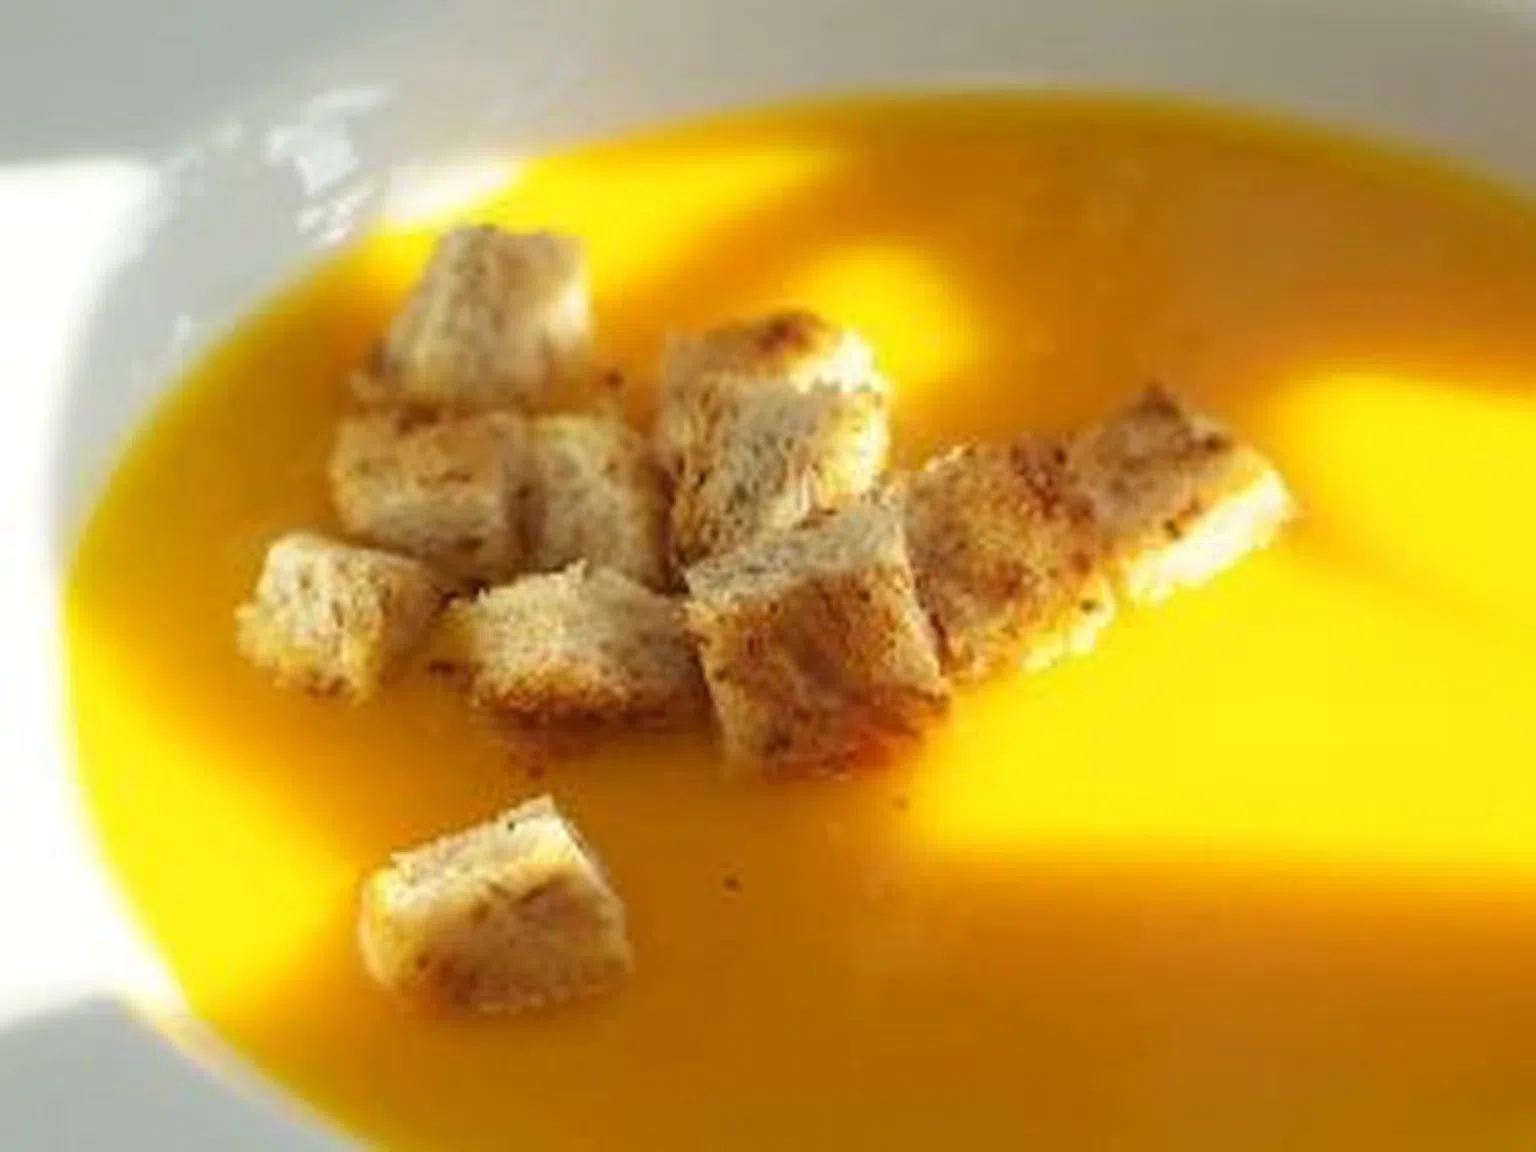 Крем-супа от тиква